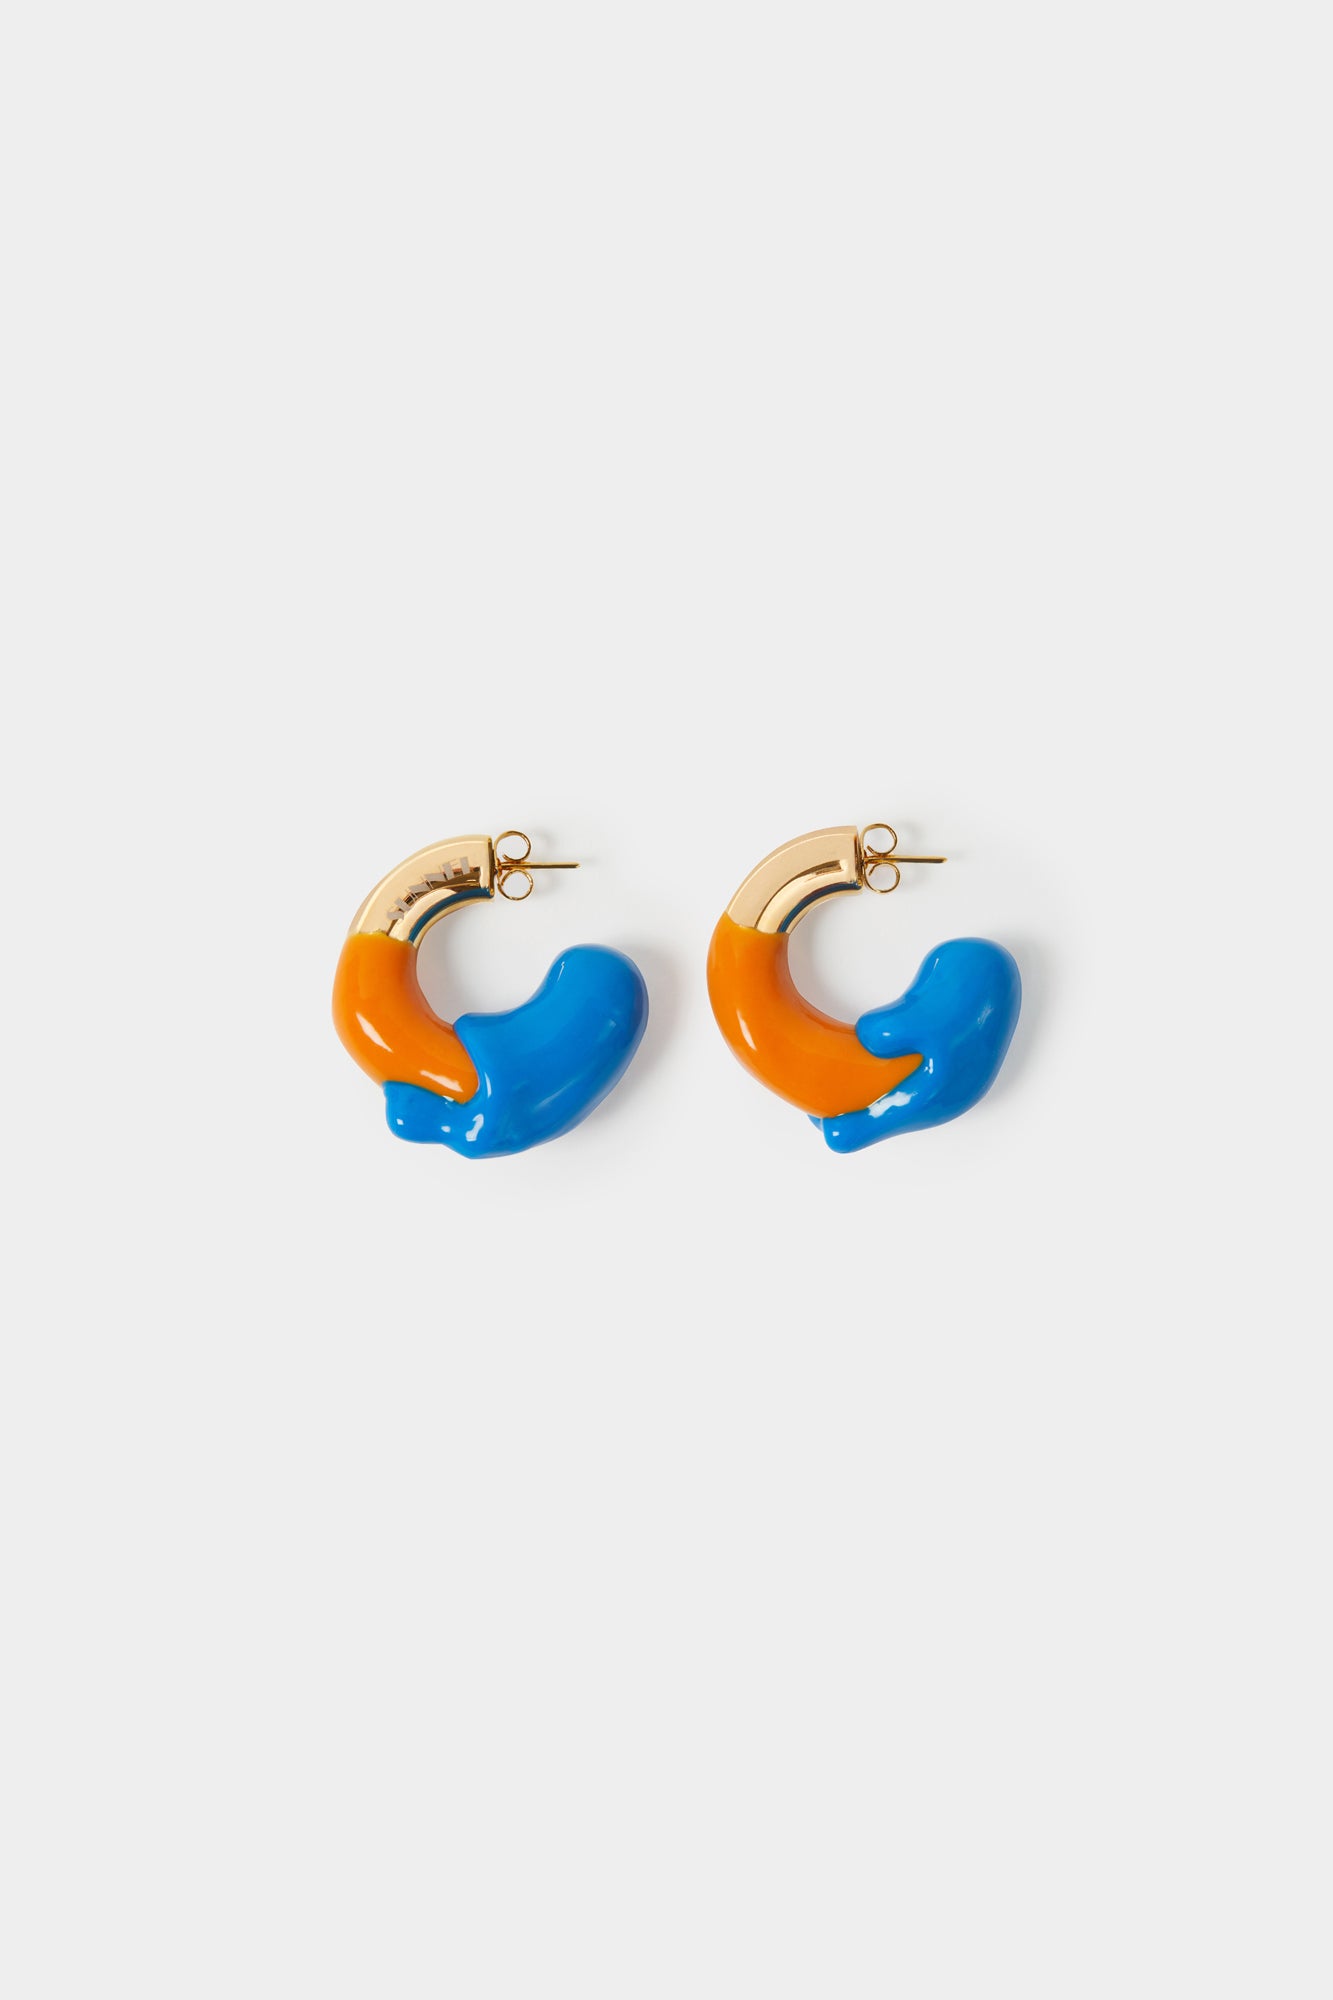 SMALL RUBBERIZED EARRINGS GOLD / orange & electric blue